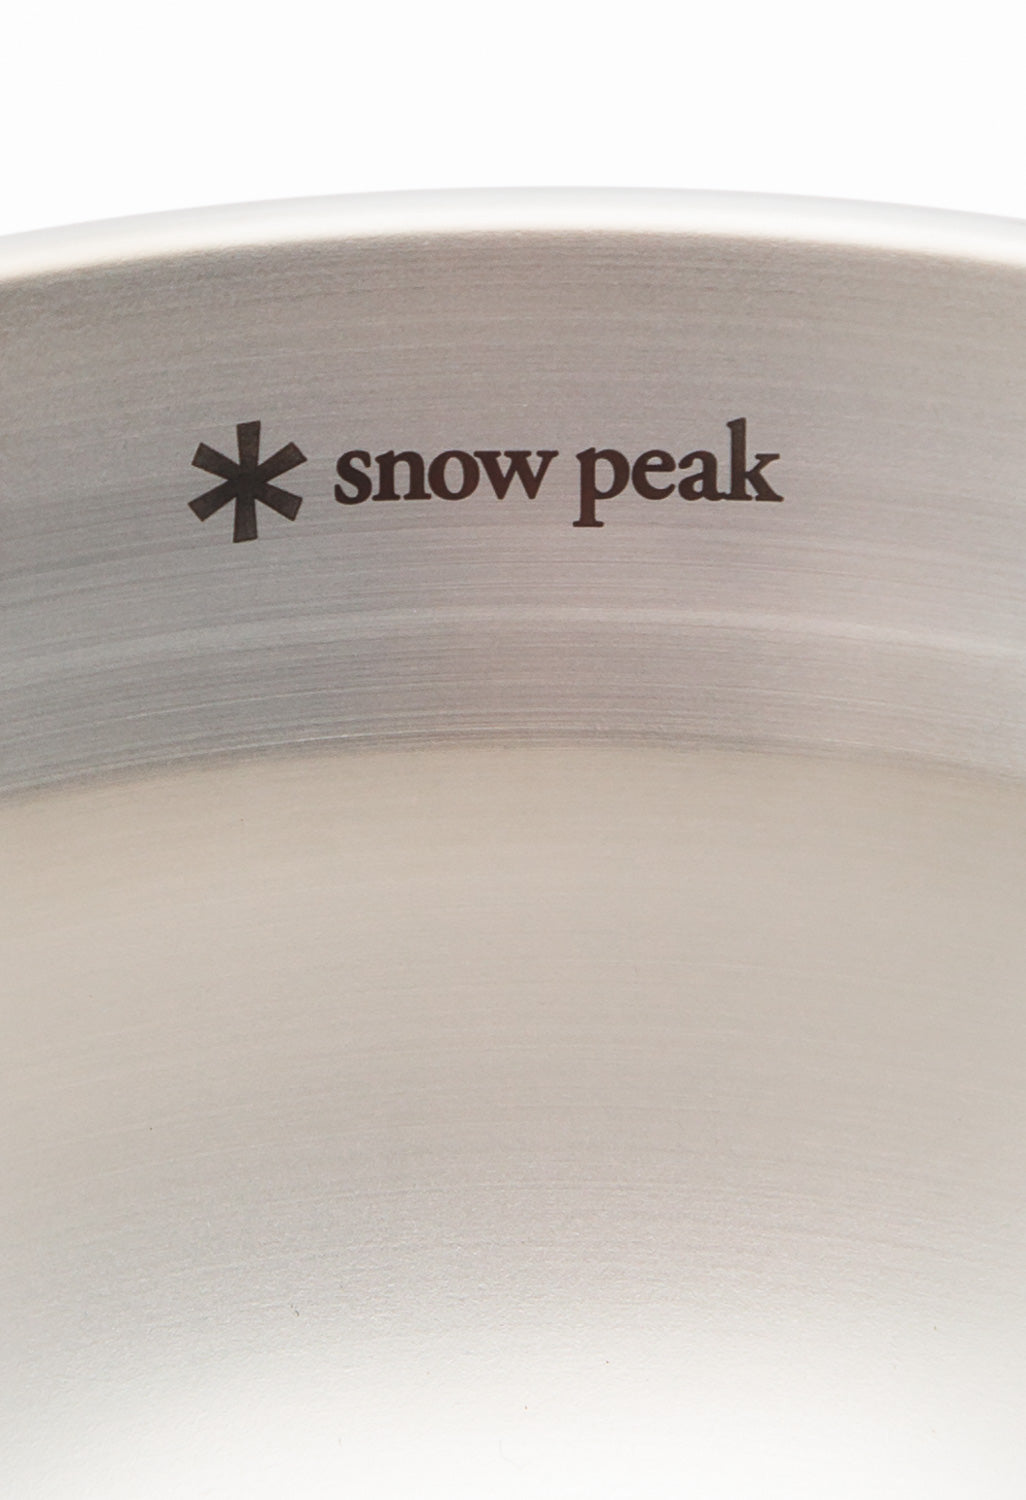 Snow Peak Tableware Bowl - Medium - Stainless Steel